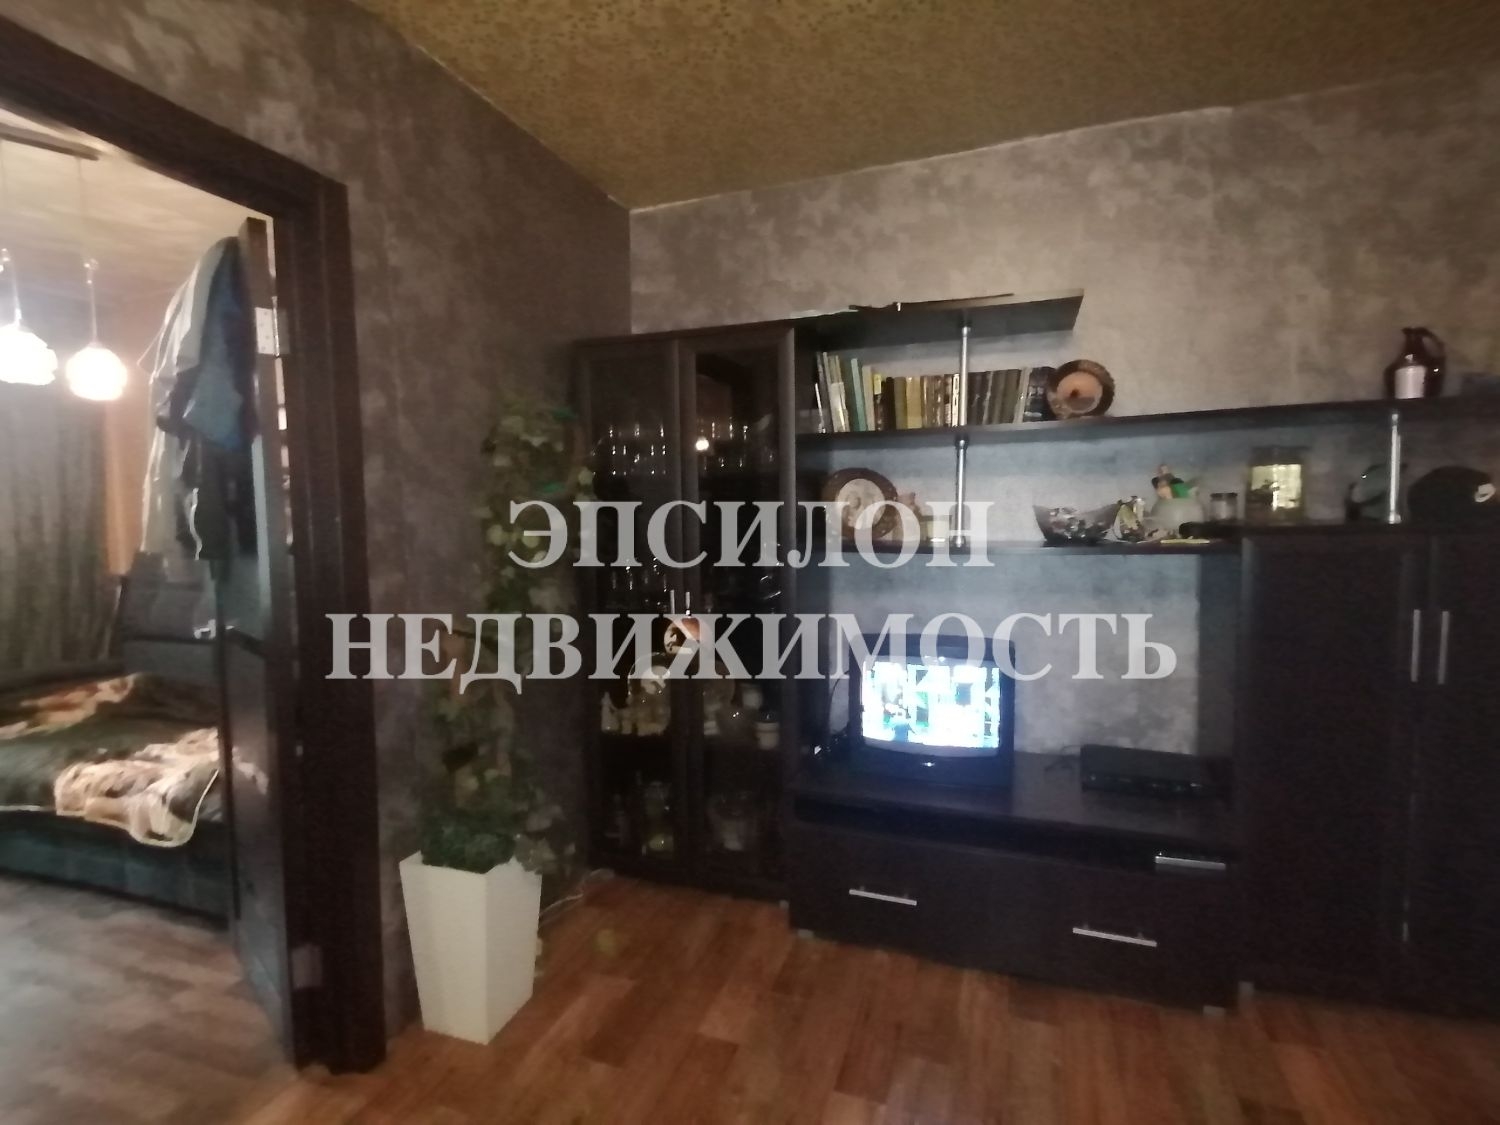 Продам 3-комнатную квартиру в городе Курск, на улице Союзная, 51б, 1-этаж 5-этажного Панель дома, площадь: 47/36/6 м2